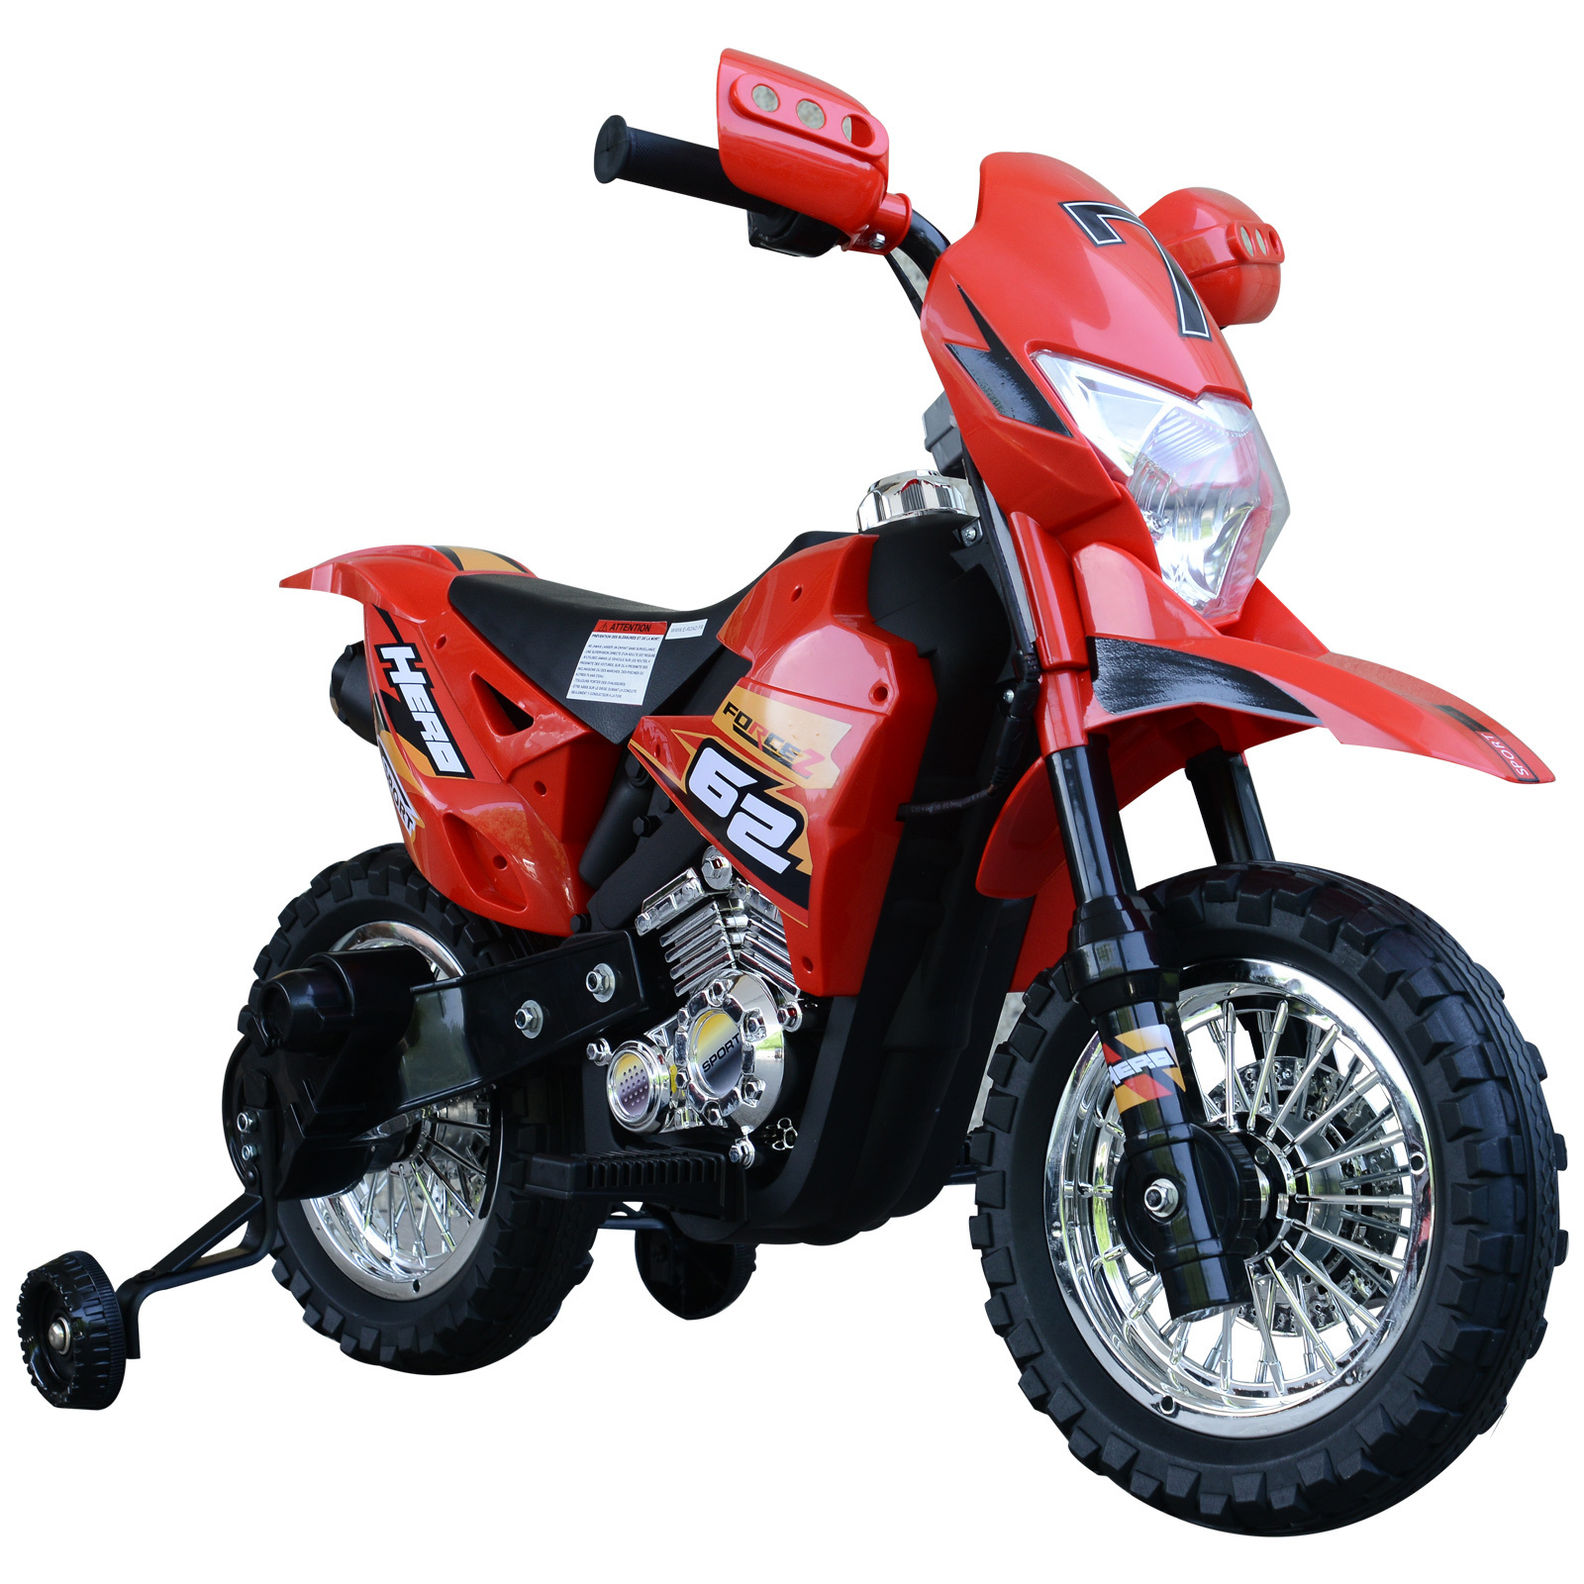 Elektro-Motorrad für Kinder Farbe: rot bestellen | Weltbild.de